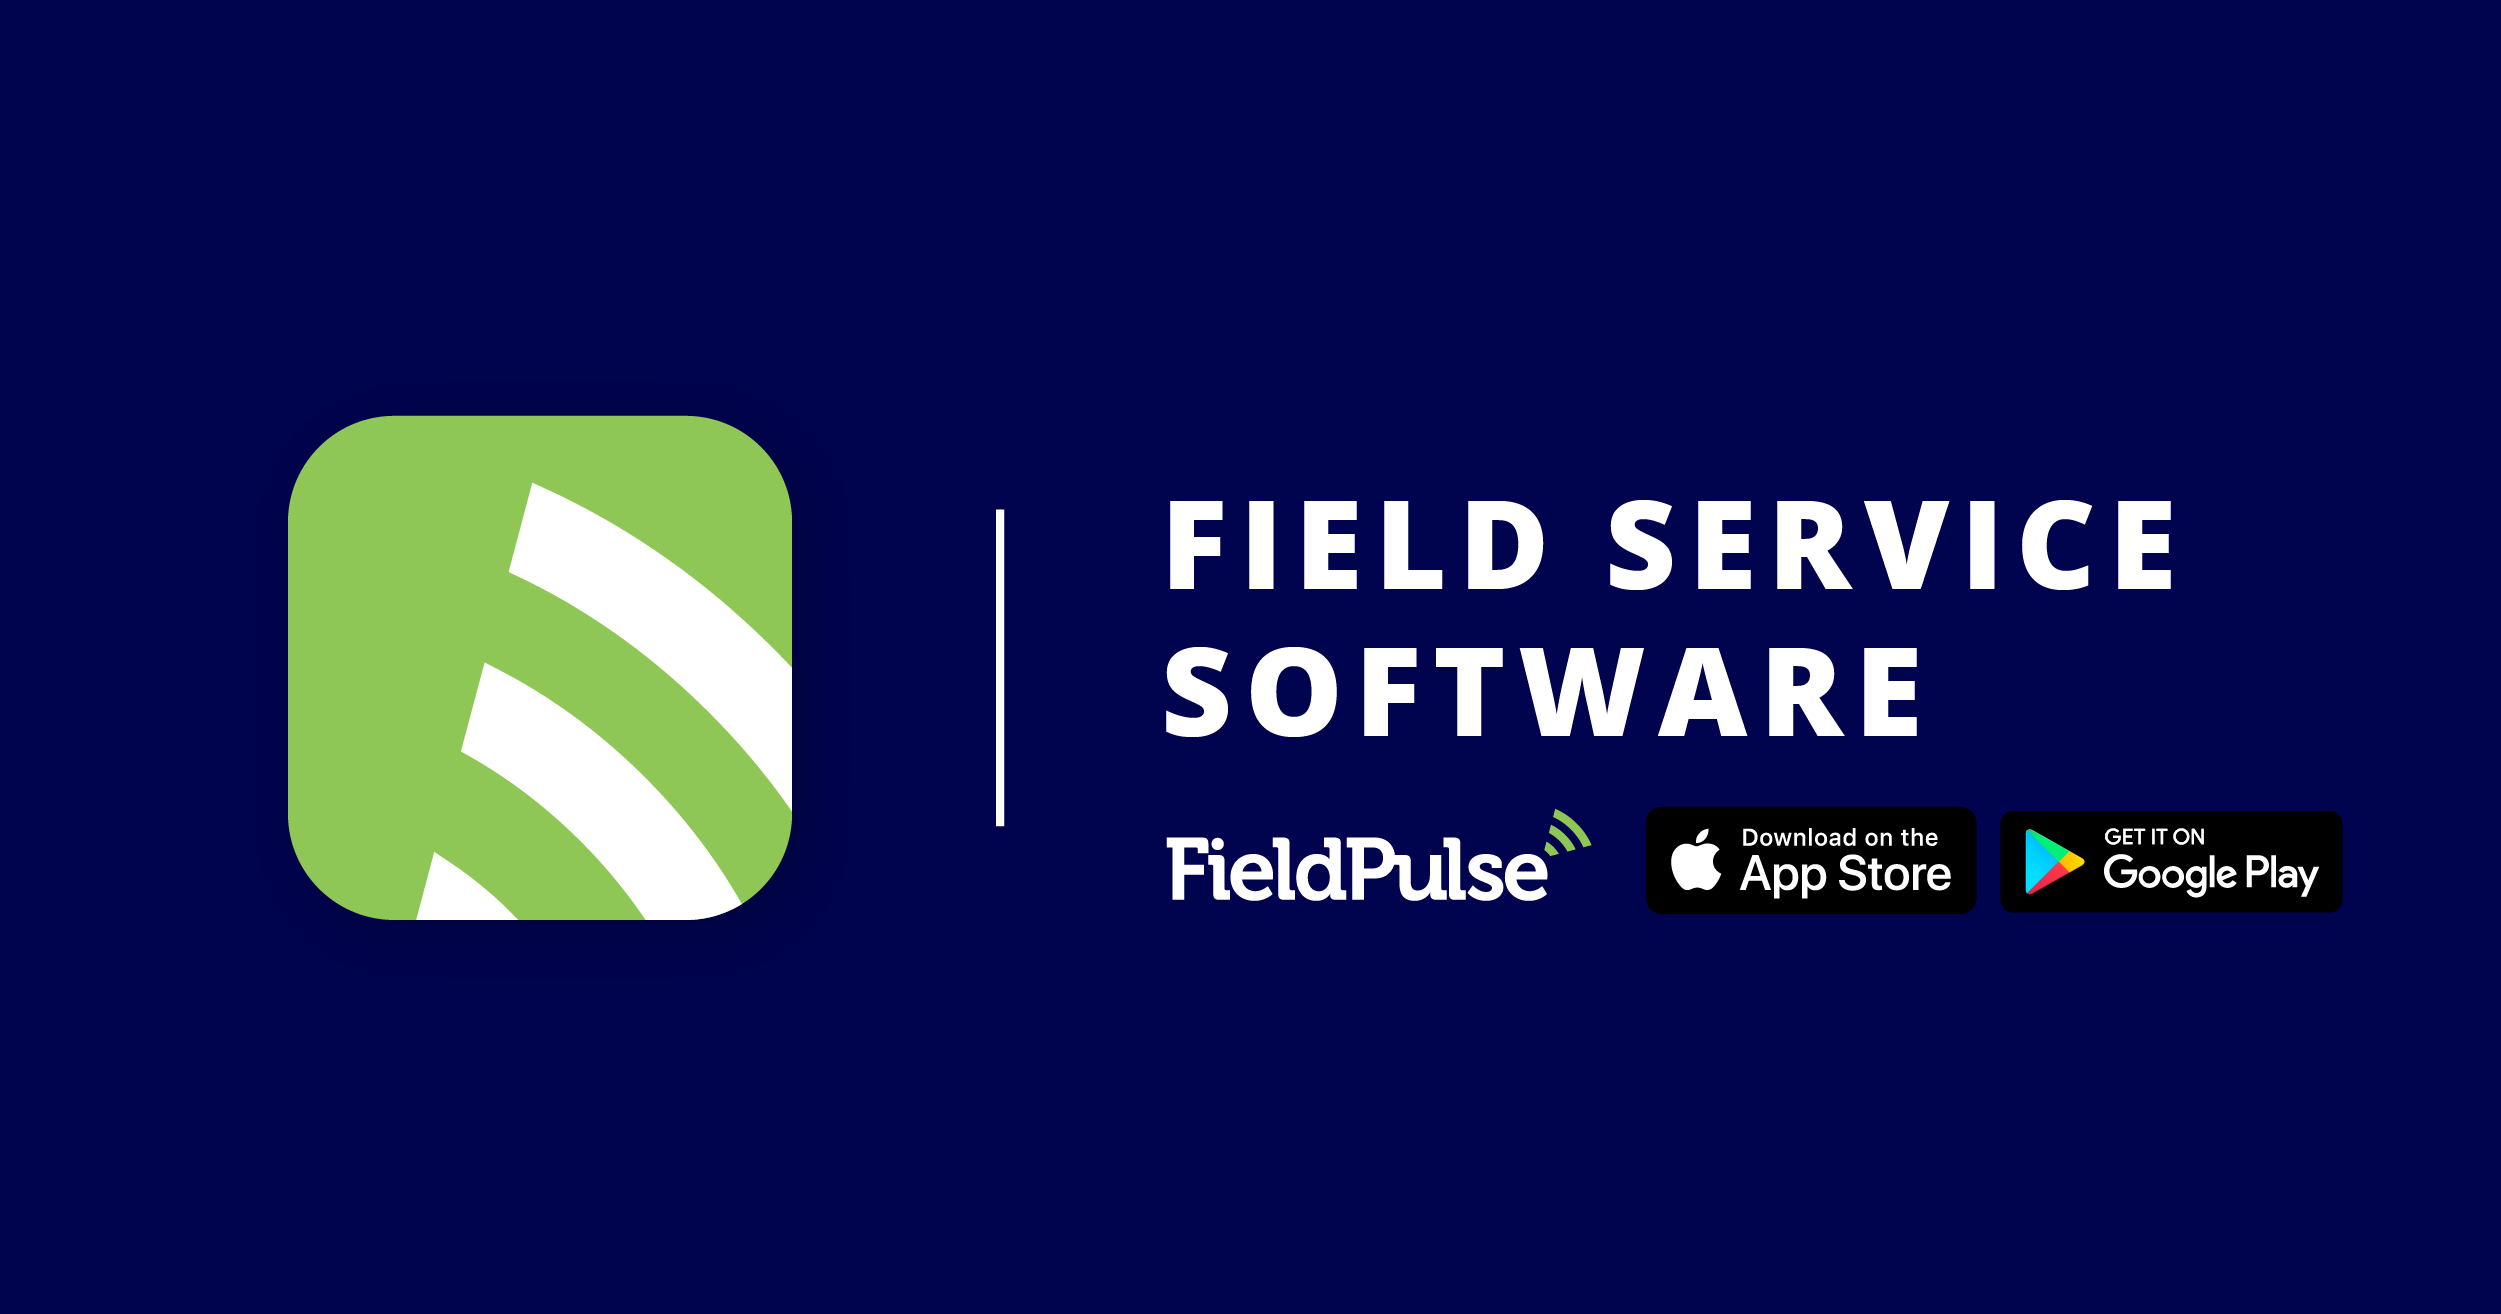 Job Management Software | FieldPulse™️ | Field Service App